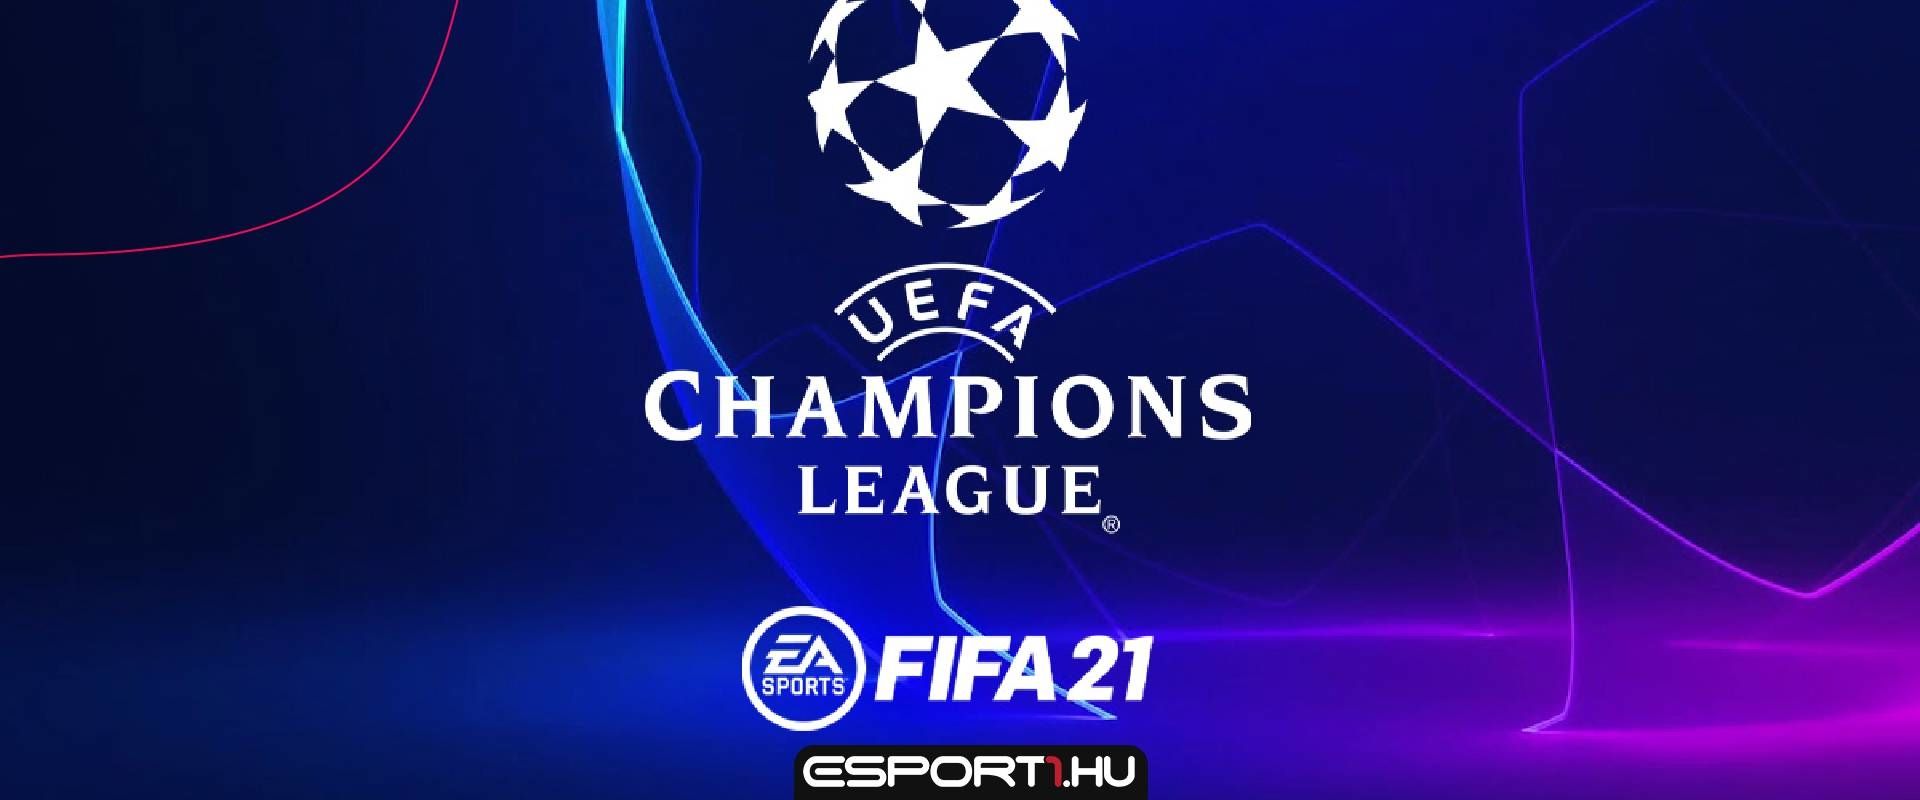 Bekerülhet magyar csapat a FIFA21-be valamelyik nemzetközi sorozat révén?